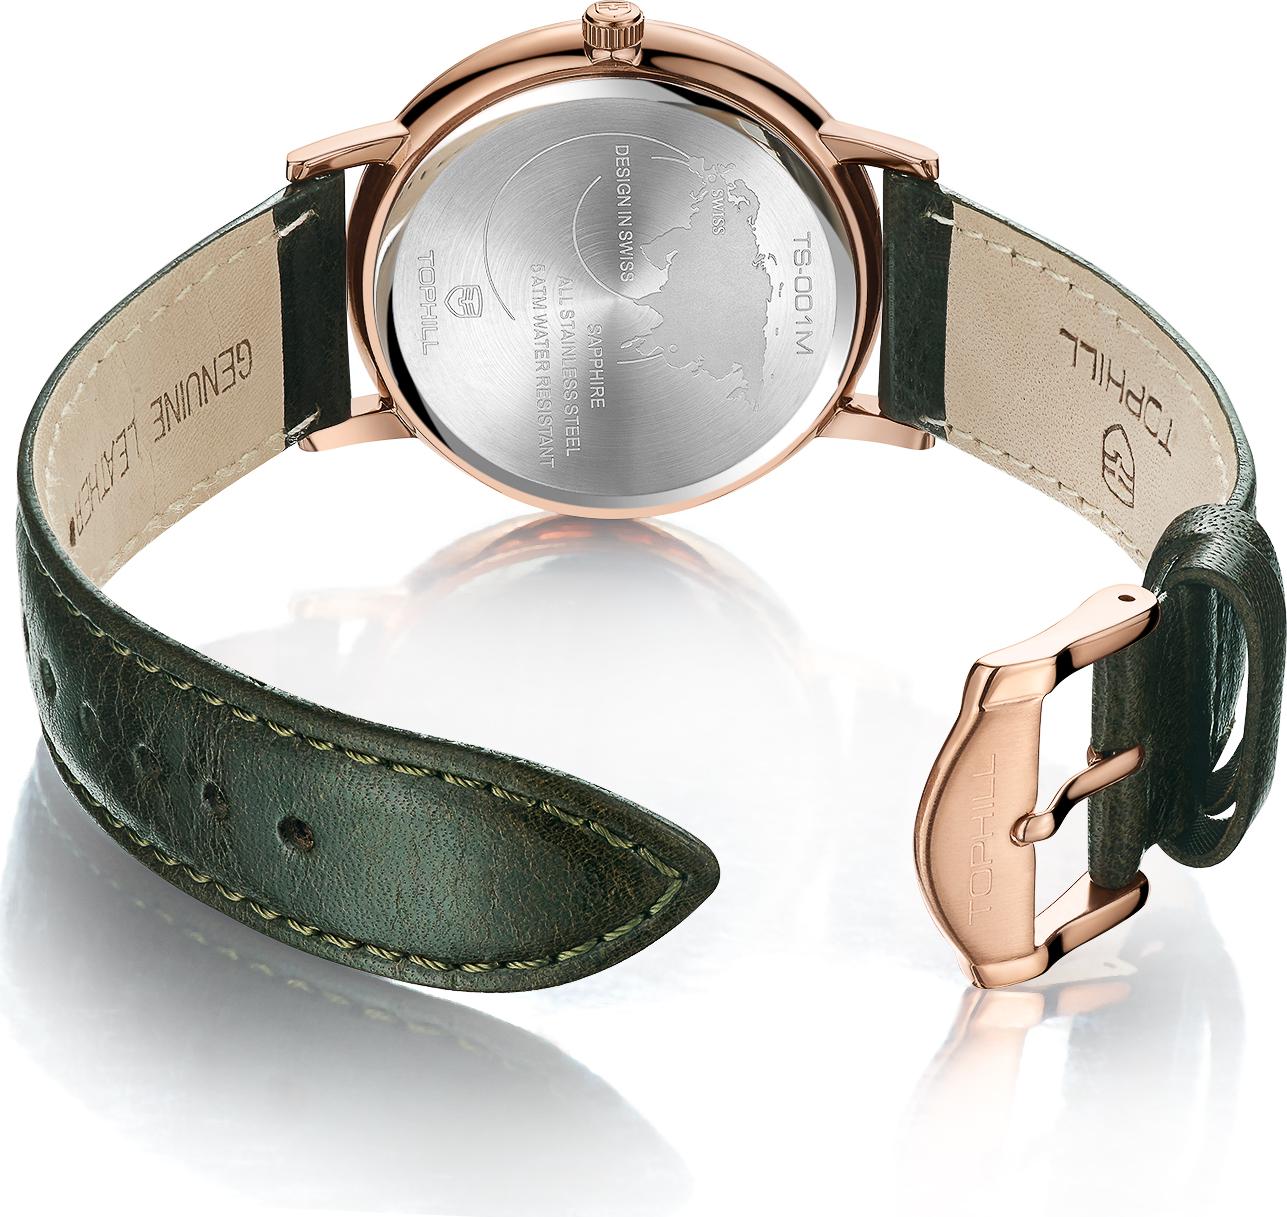 Đồng hồ nam dây da chính hãng Thụy Sĩ TOPHILL TS001M.PG3252